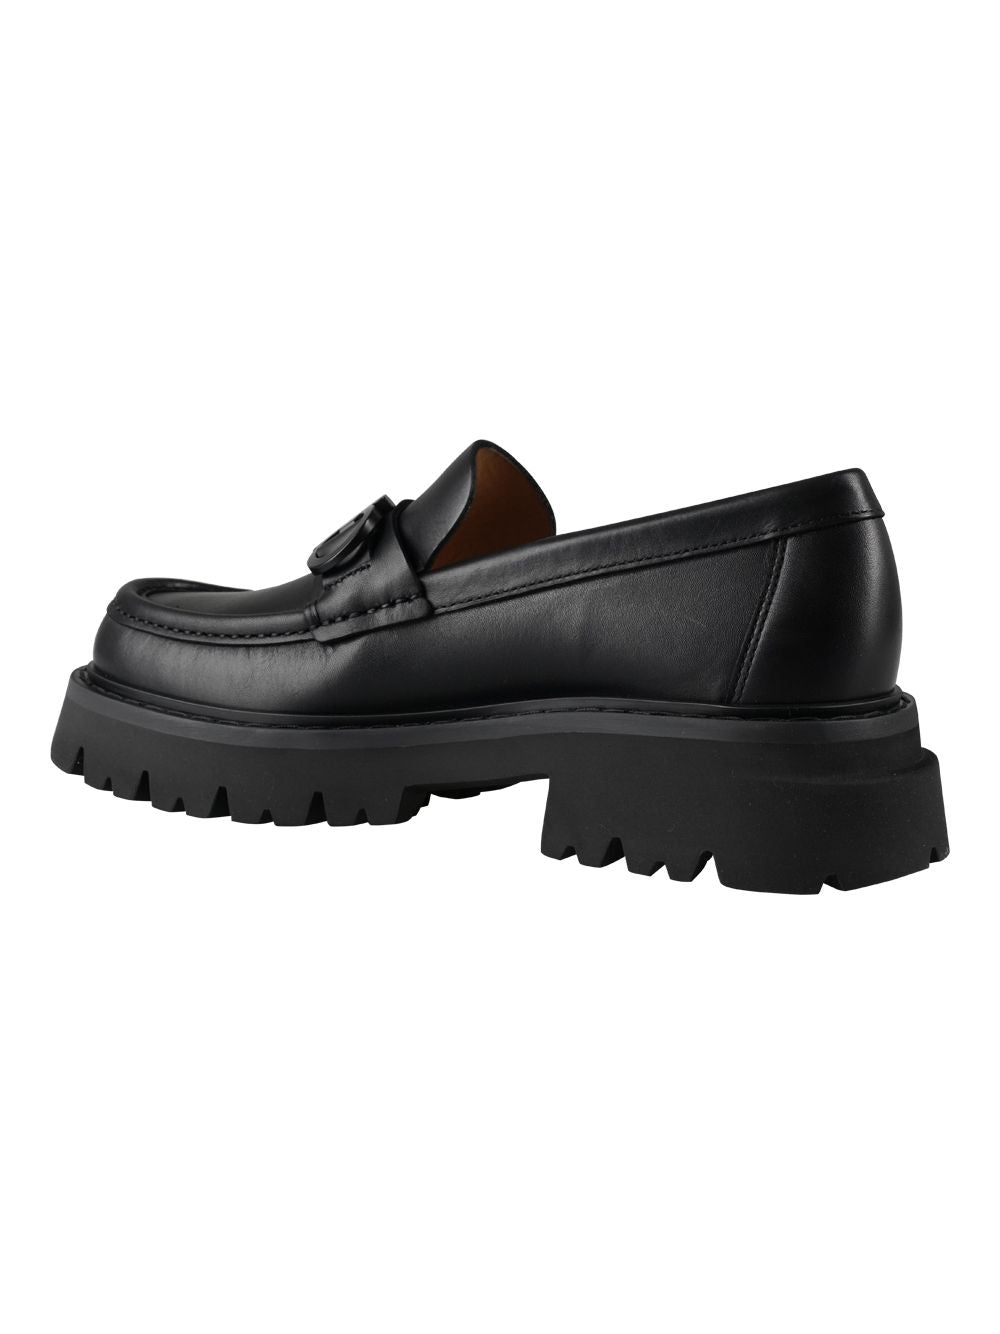 أحذية موكاسين جلدية للرجال من فيراغامو FW23 - أسود